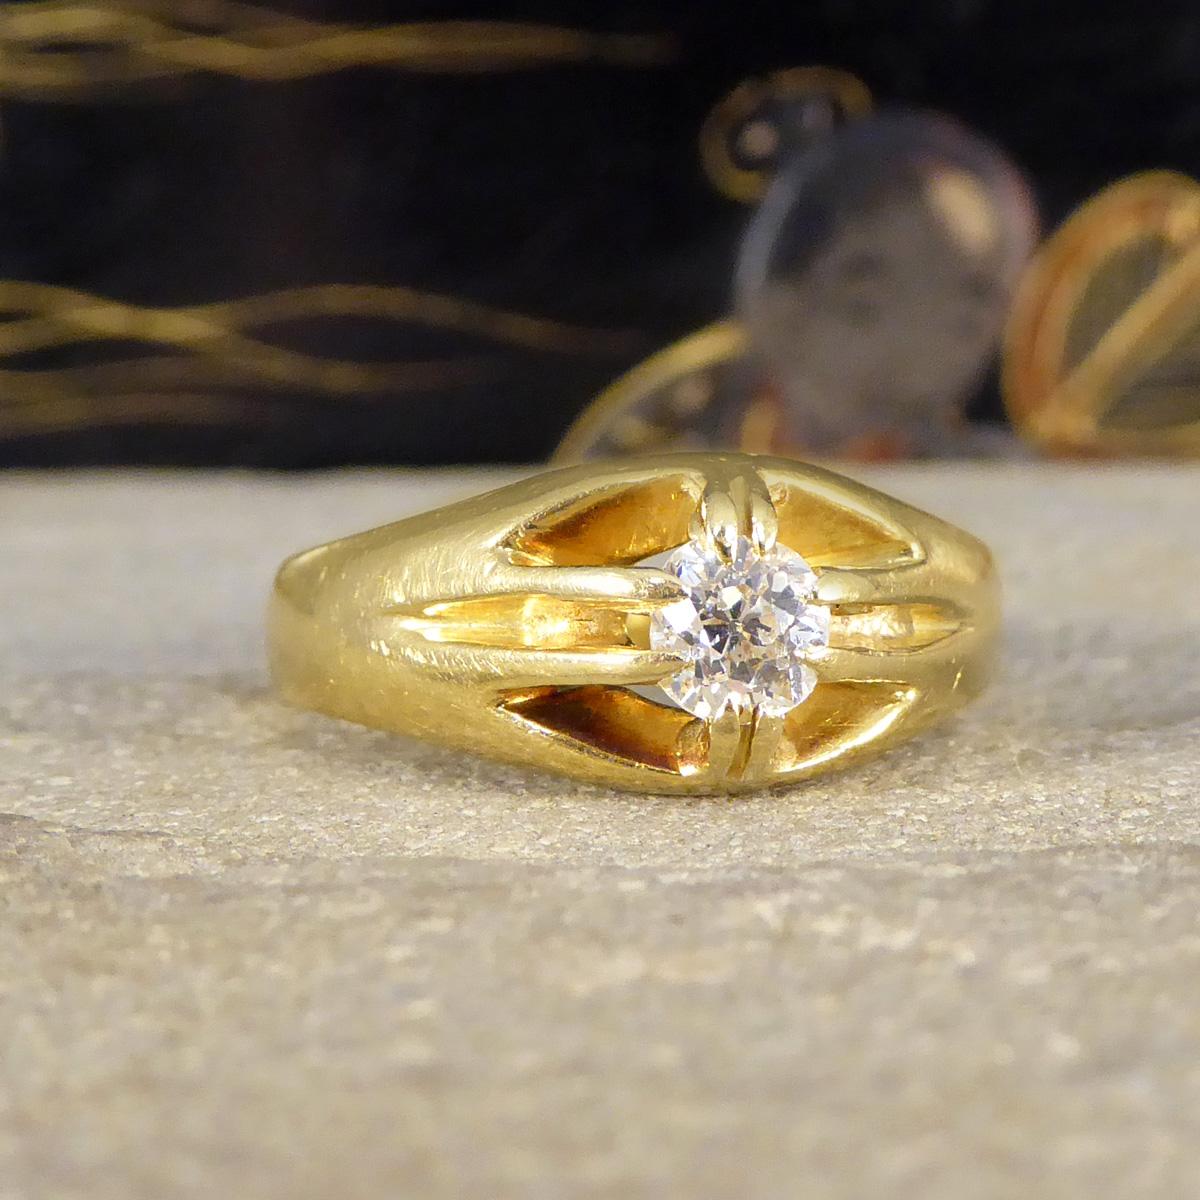 Entrez dans la romance du passé avec notre bague Belcher à diamant taille coussin de la fin de l'époque victorienne. Cette pièce exquise est une belle représentation de l'artisanat de l'époque victorienne, réalisée en luxueux or jaune 18ct. Elle est